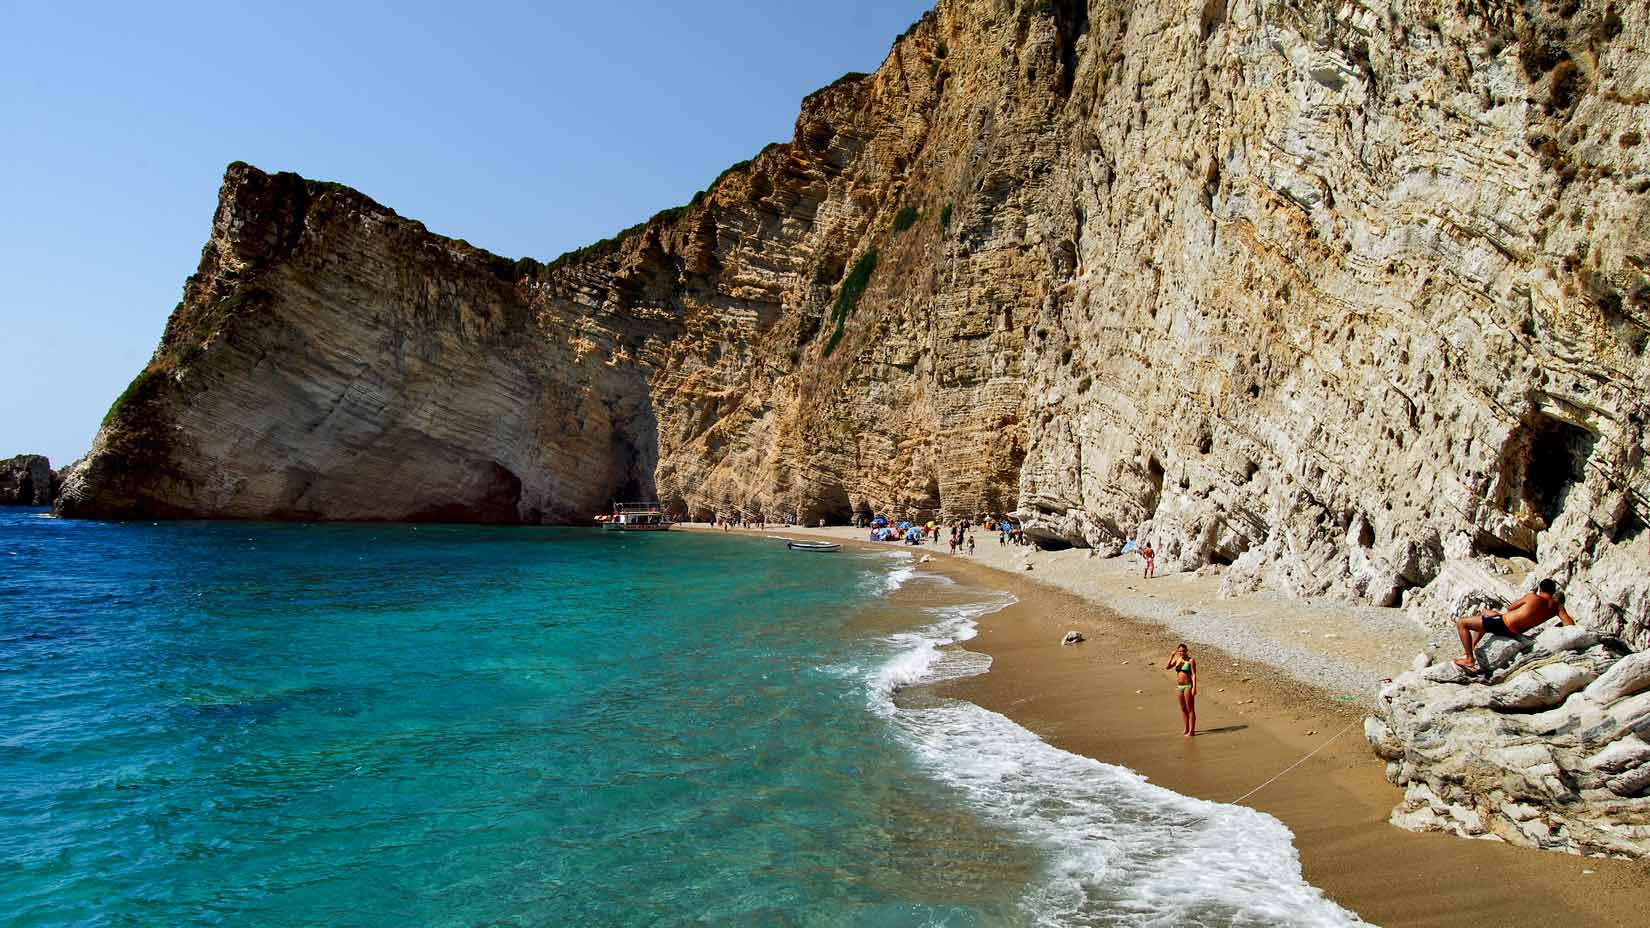 Pláž Chomí, též známa jako Rajská pláž. Úžasný kousek Korfu pod strmým útesem, přístupný pouze z moře